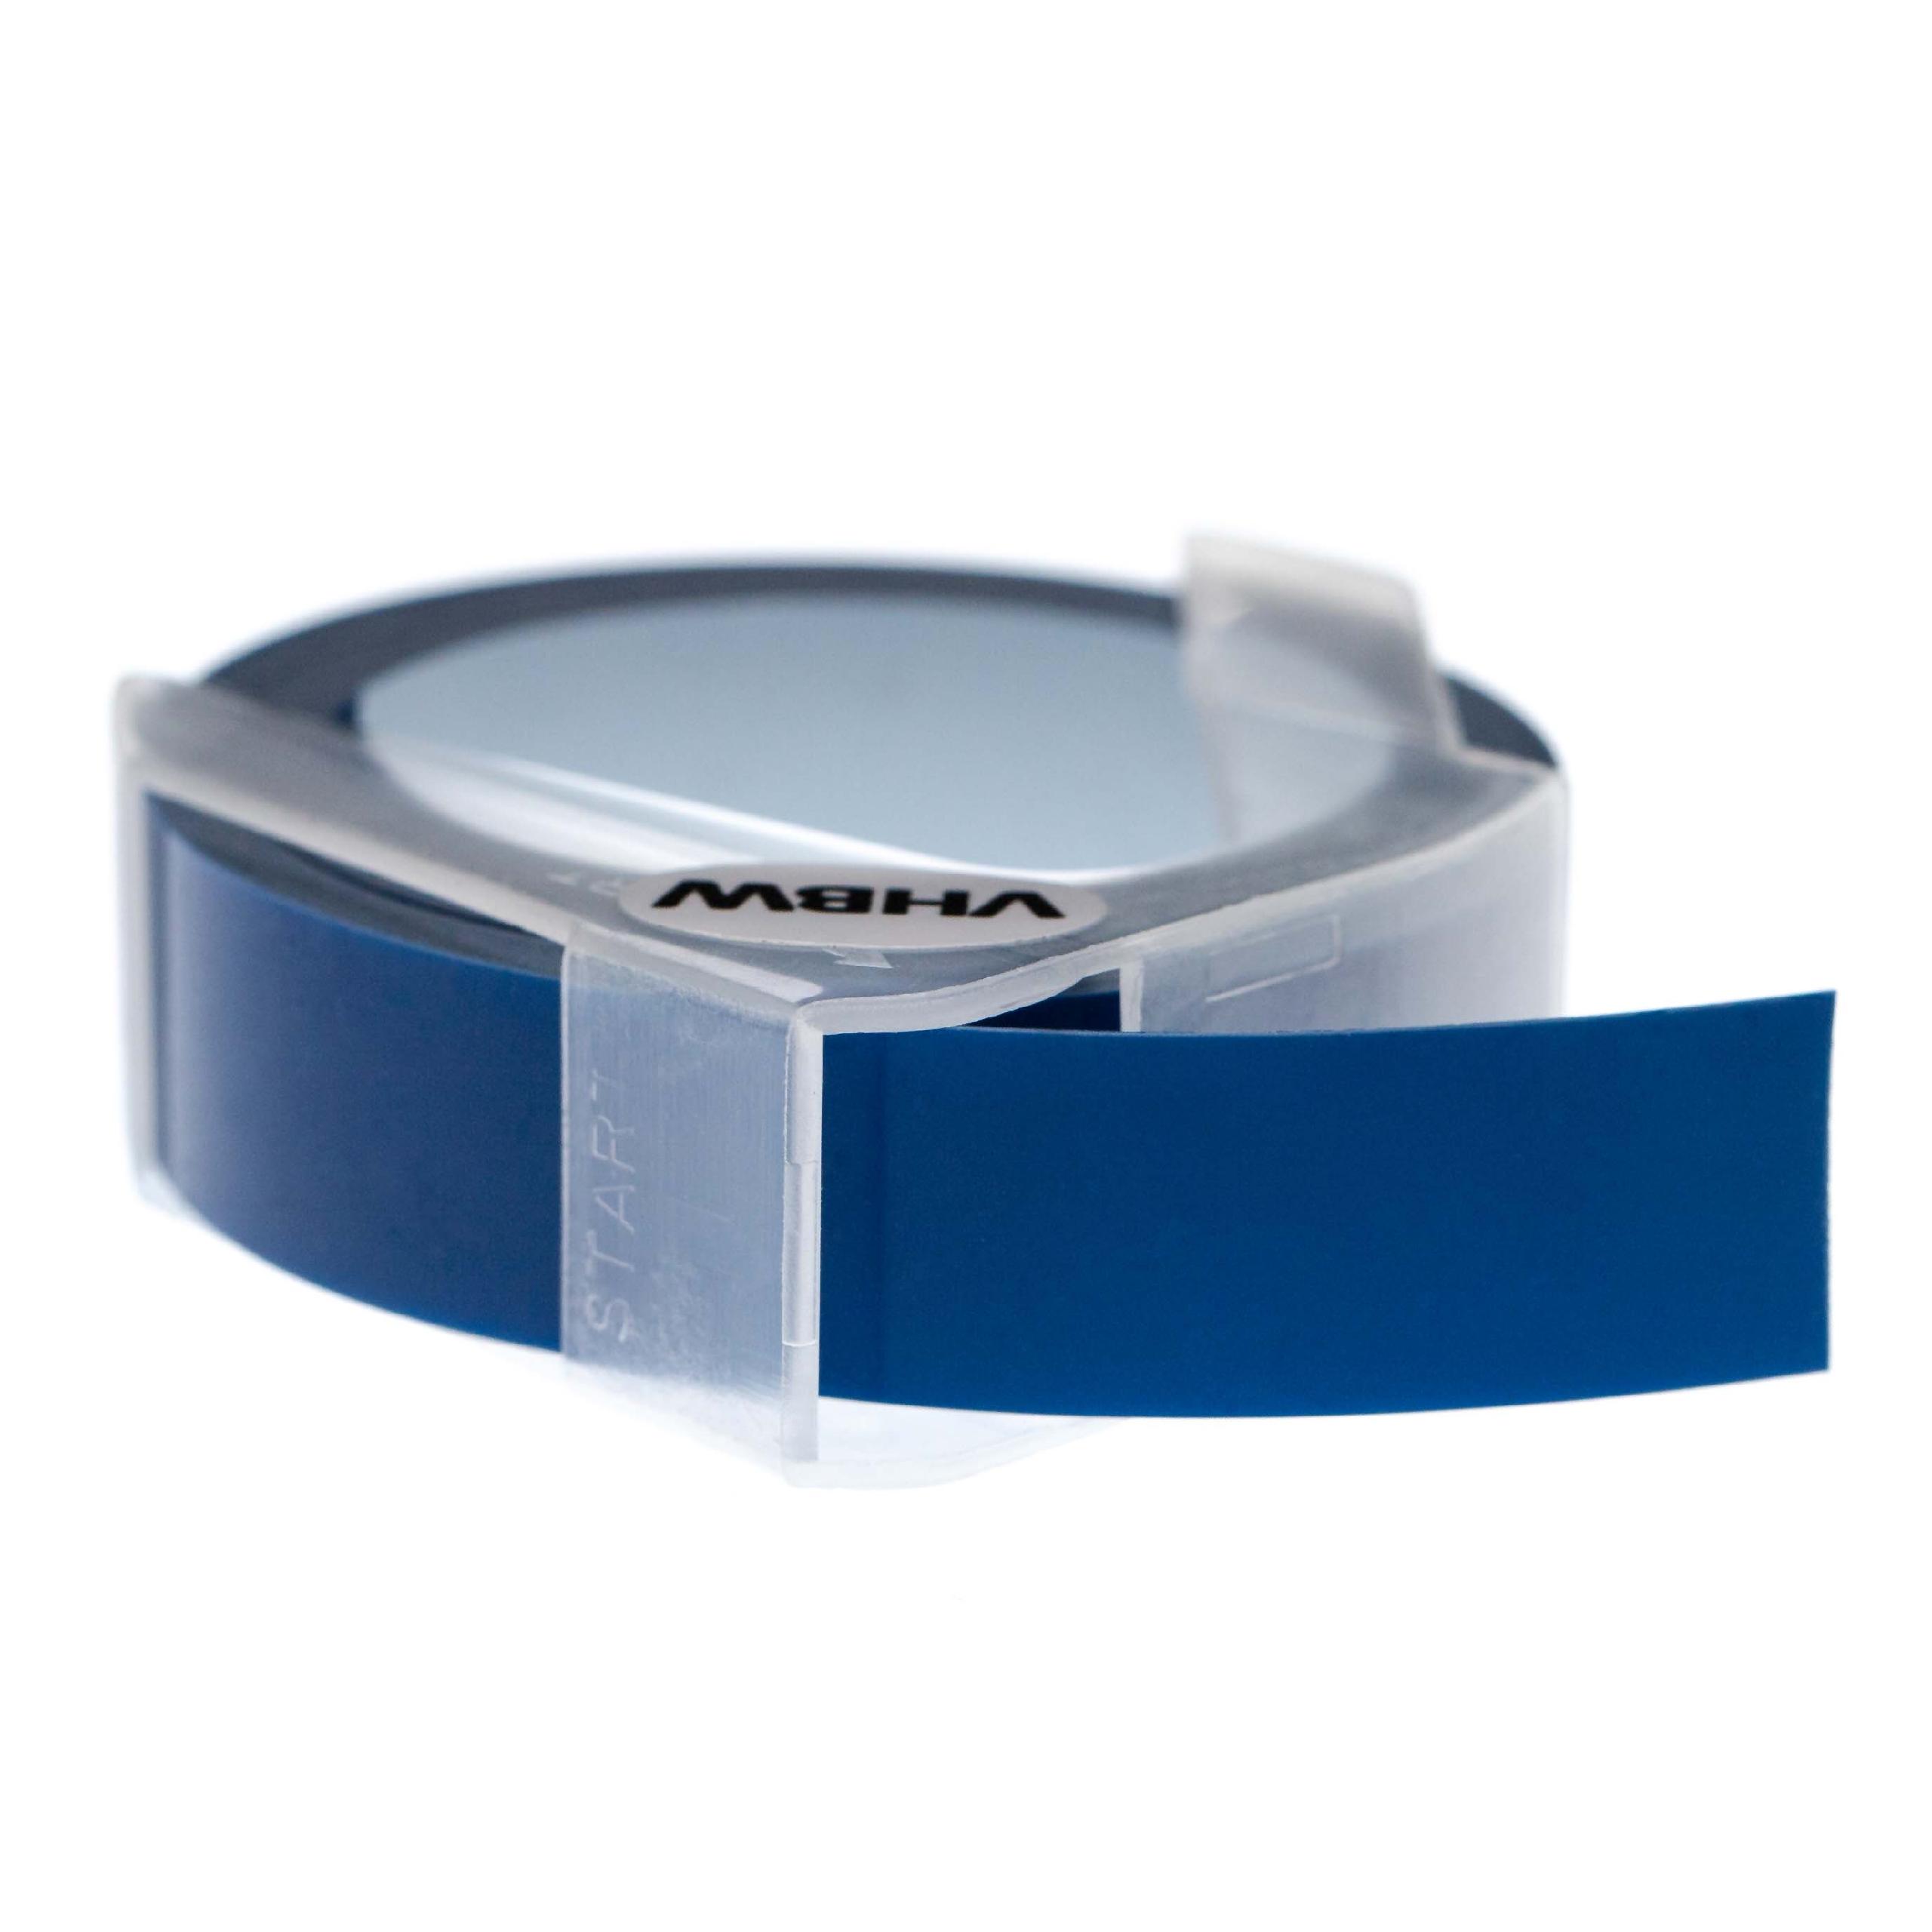 Casete cinta relieve 3D Casete cinta escritura reemplaza Dymo 0898142 Blanco su Azul